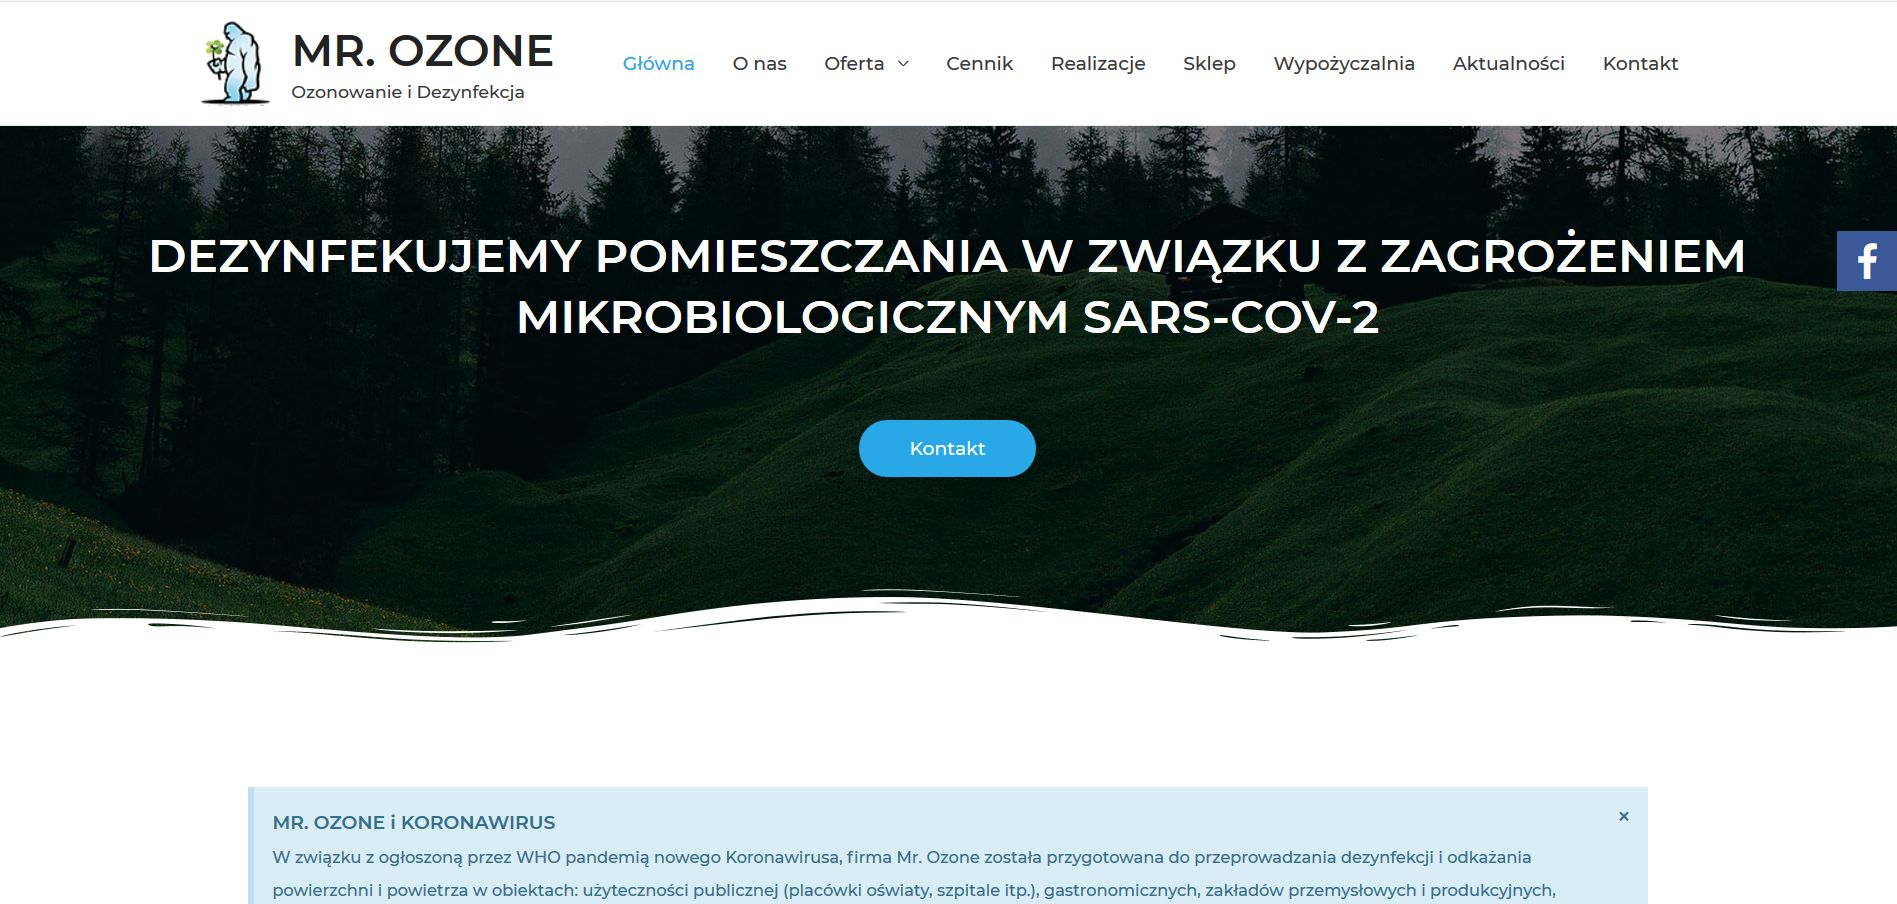 Mr. Ozone – ozonowanie i dezynfekcja